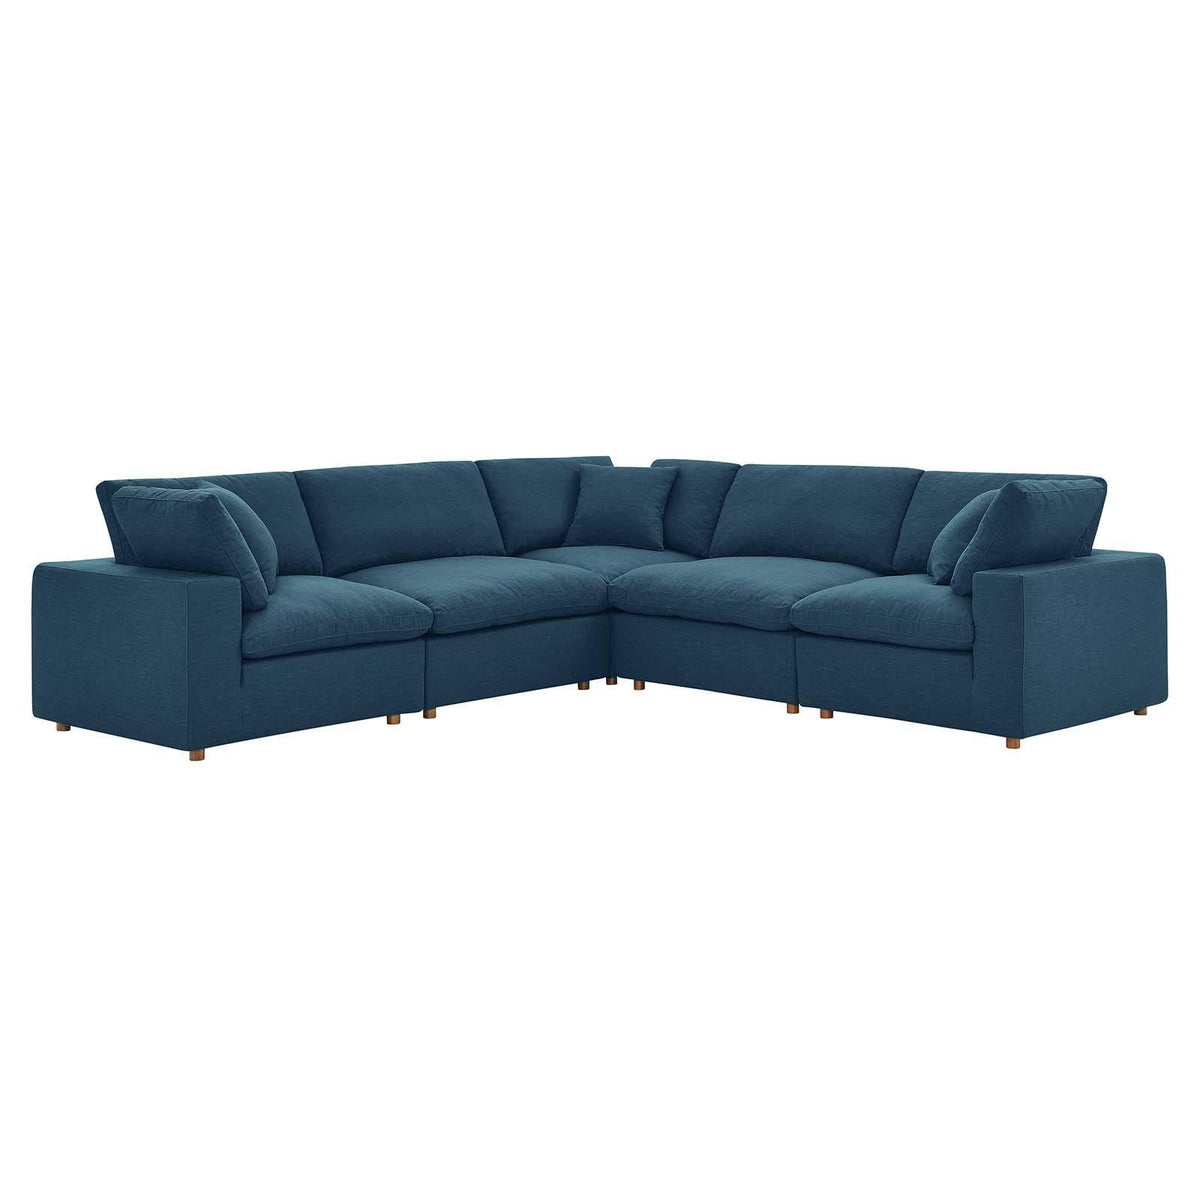 Modway Furniture Modern Commix Down Filled Overstuffed 5 Piece 5-Piece Sectional Sofa - EEI-3359